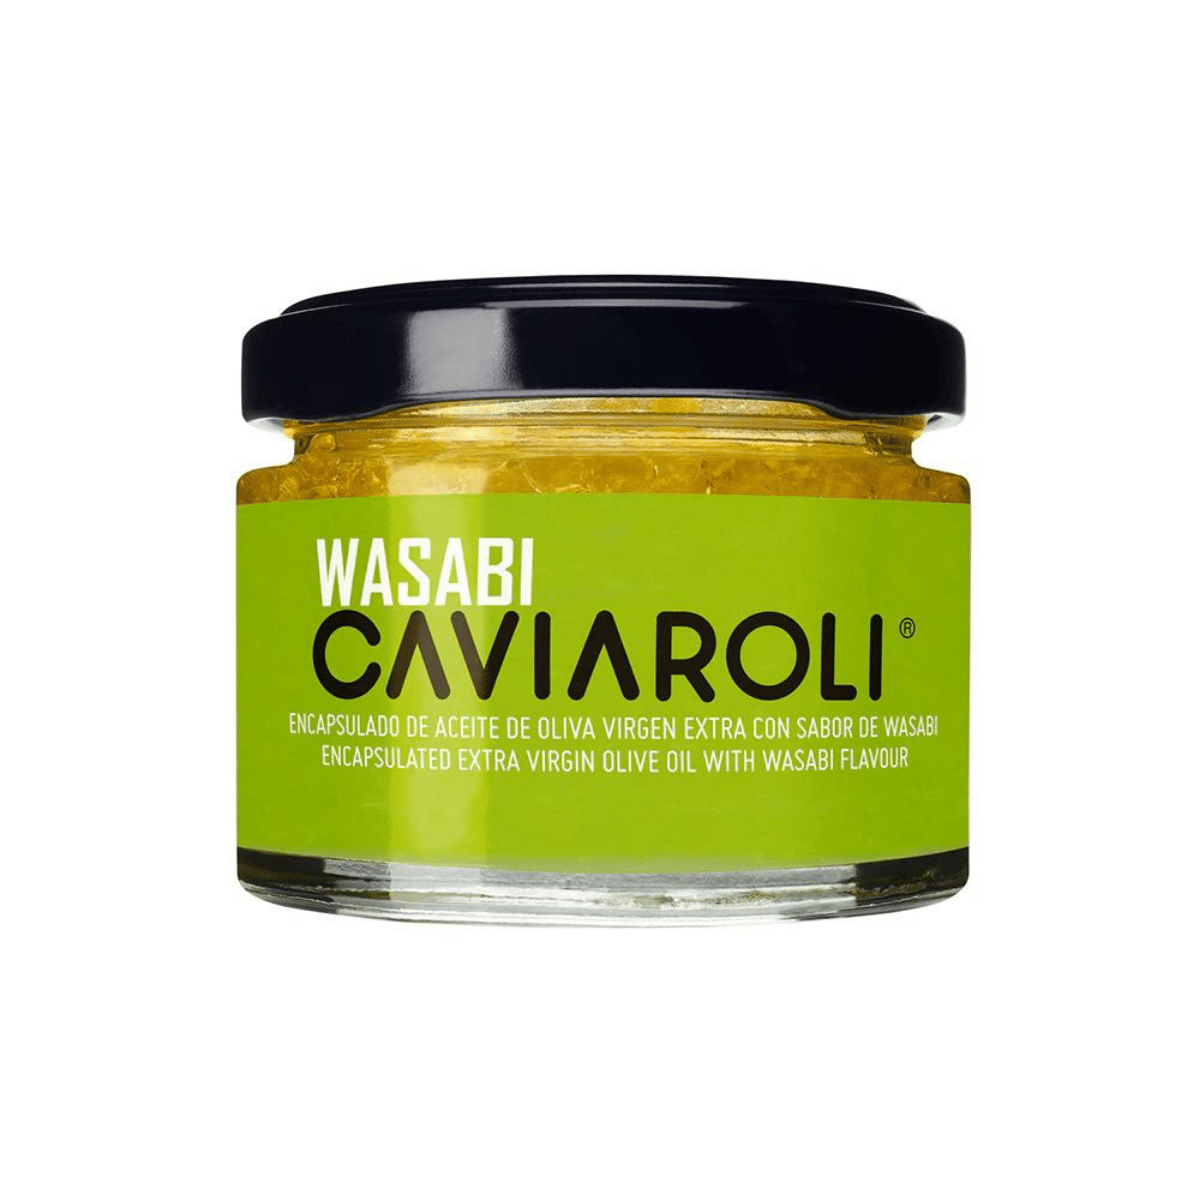 Dầu Olive Caviaroli dạng hạt vị wasabi (50g)